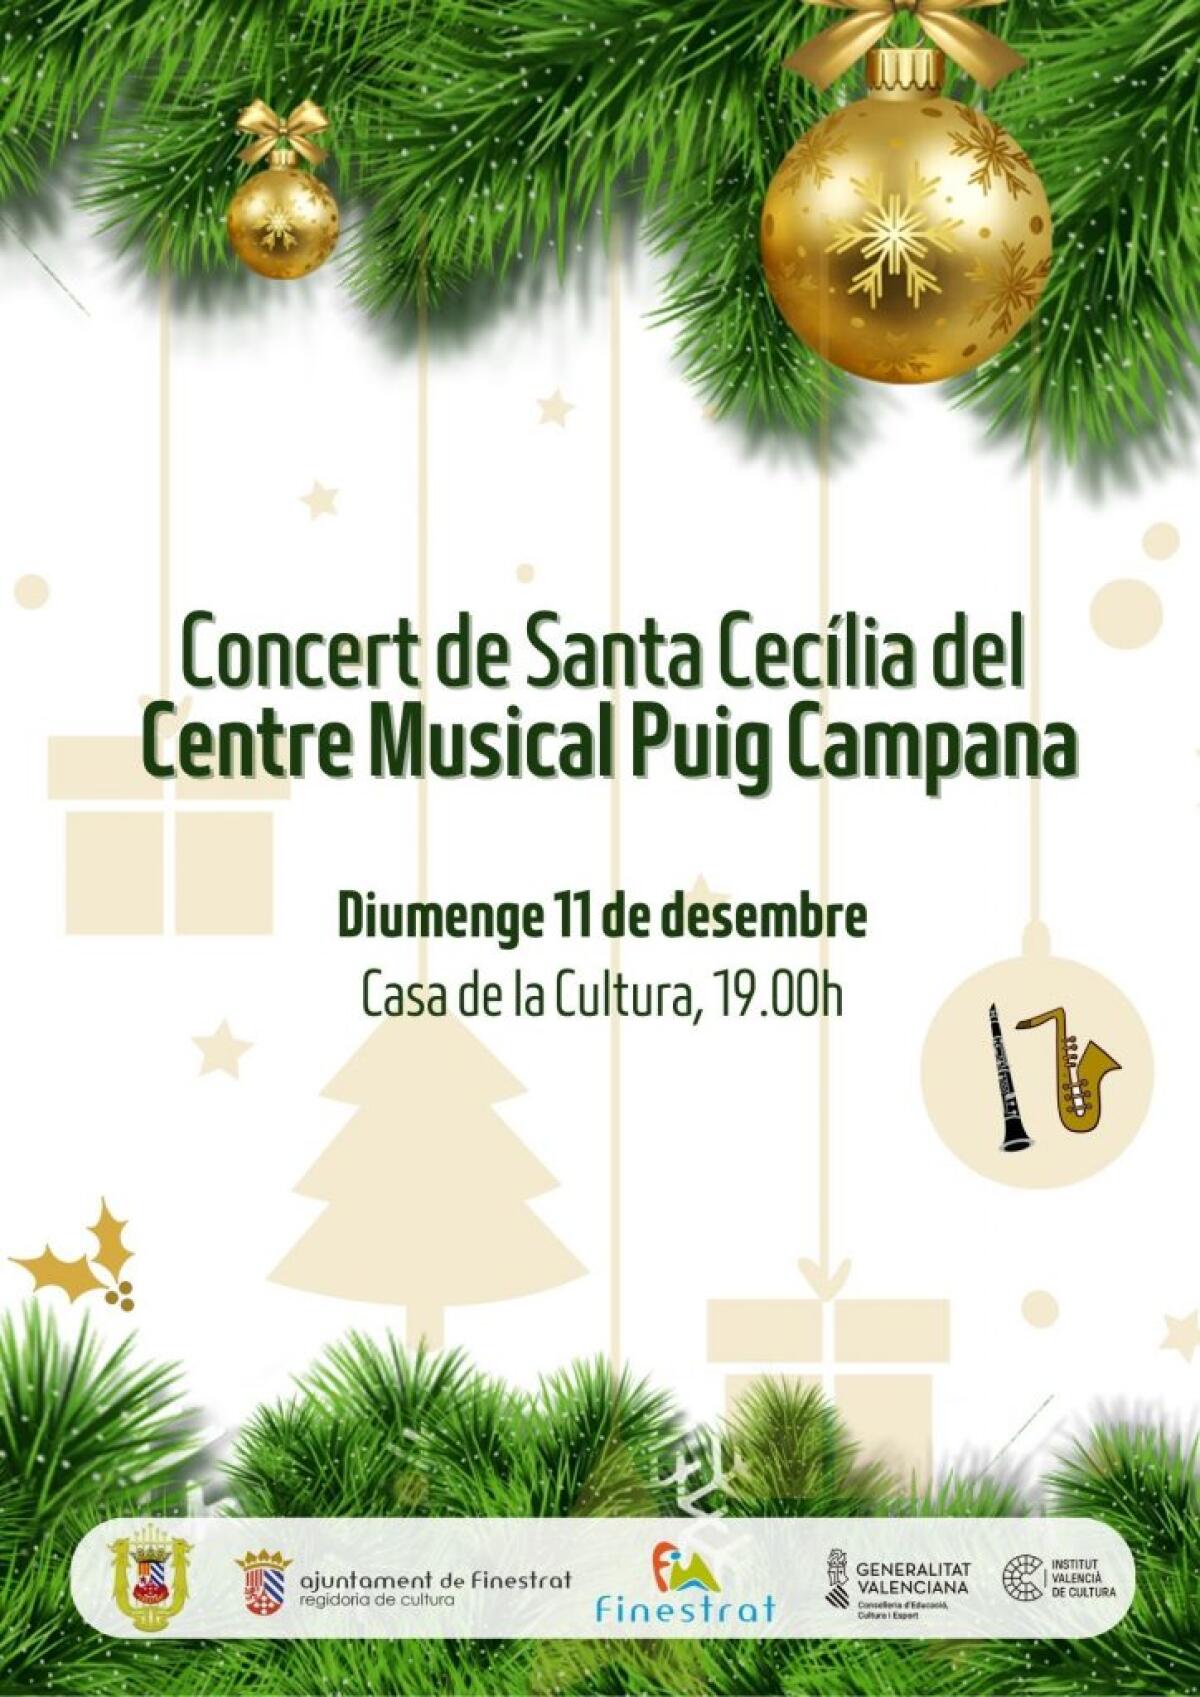 Agenda de cultura gratuita comarcal del 5 al 11 de diciembre